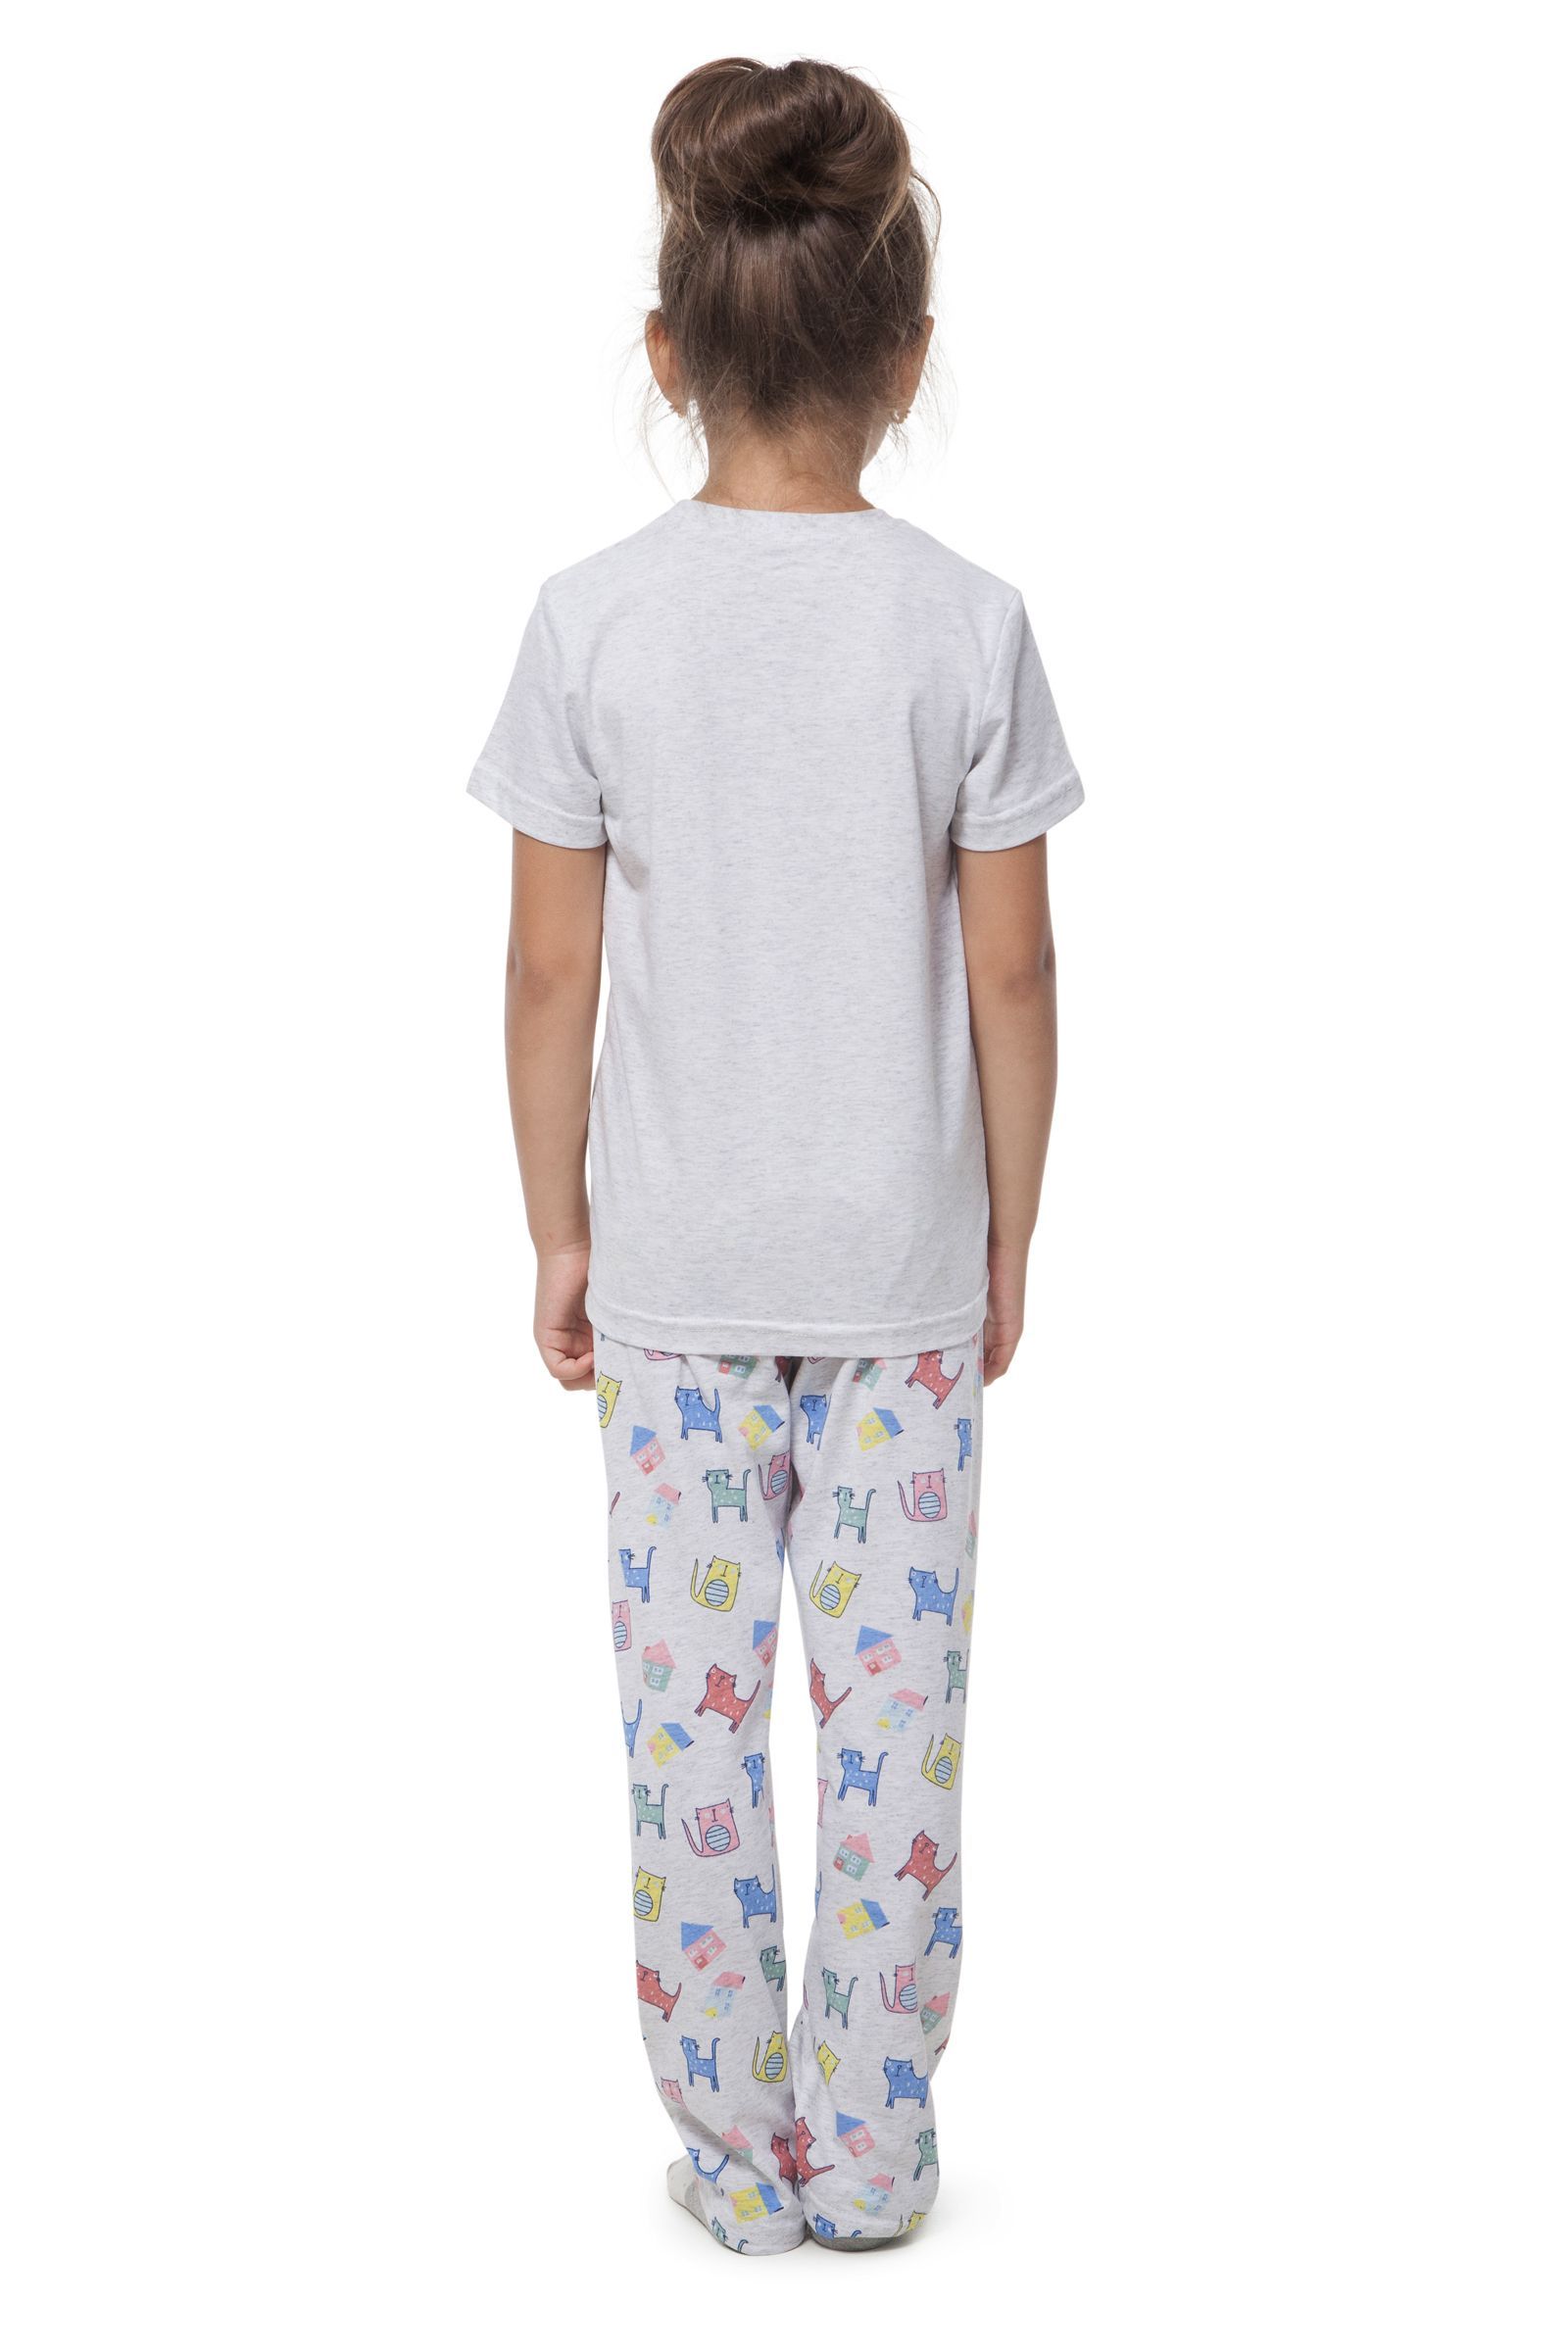 Пижама-ПЖ02-2893 оптом от производителя детской одежды 'Алёна'